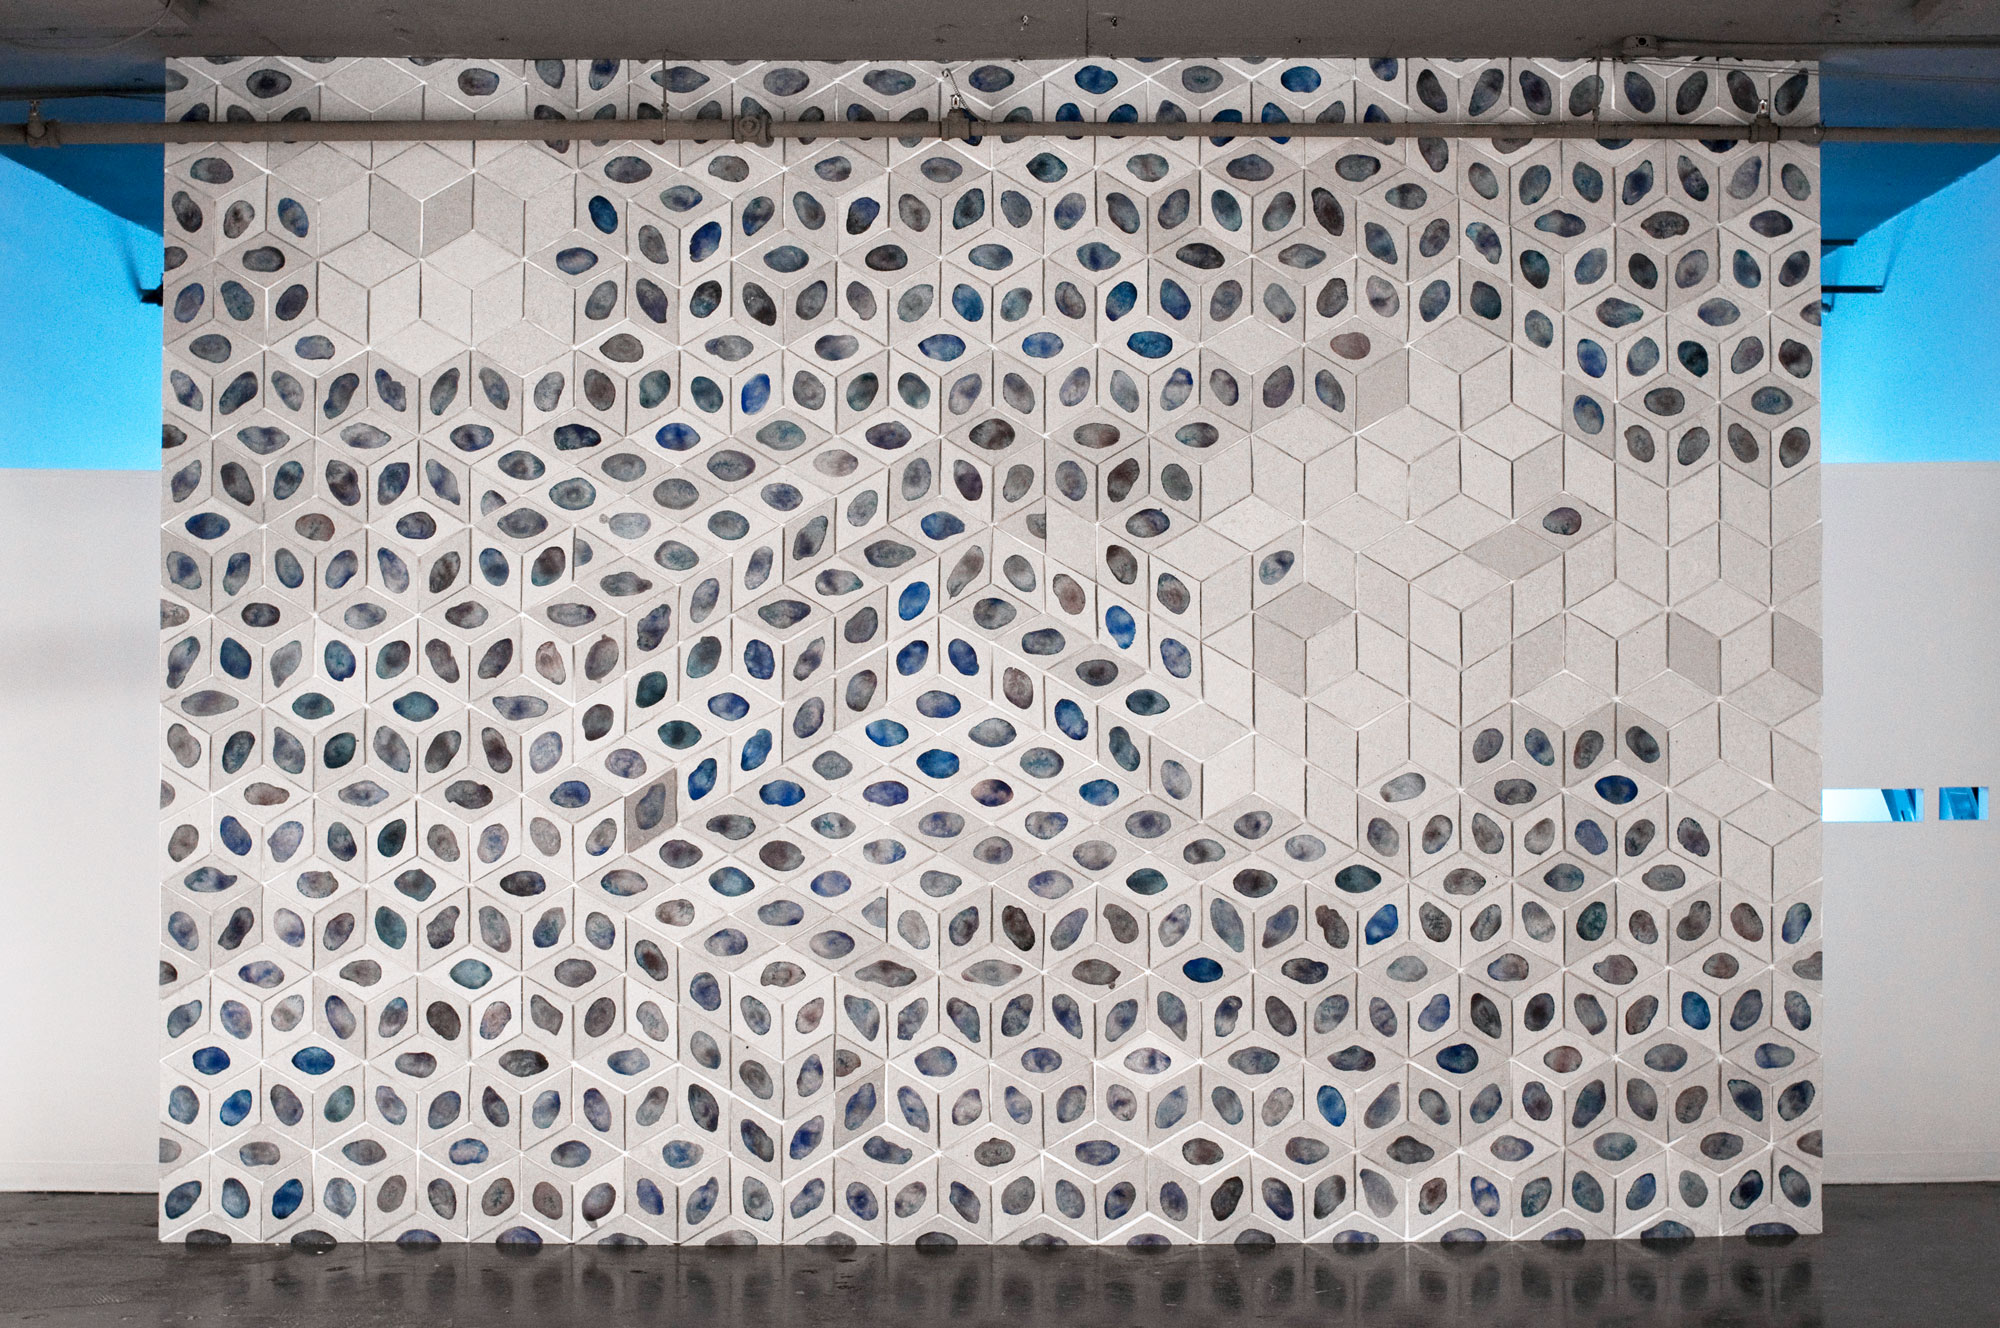 Mur de papier, 700 tuiles de papier fait à la main – Paper wall, 700 handmade paper tiles